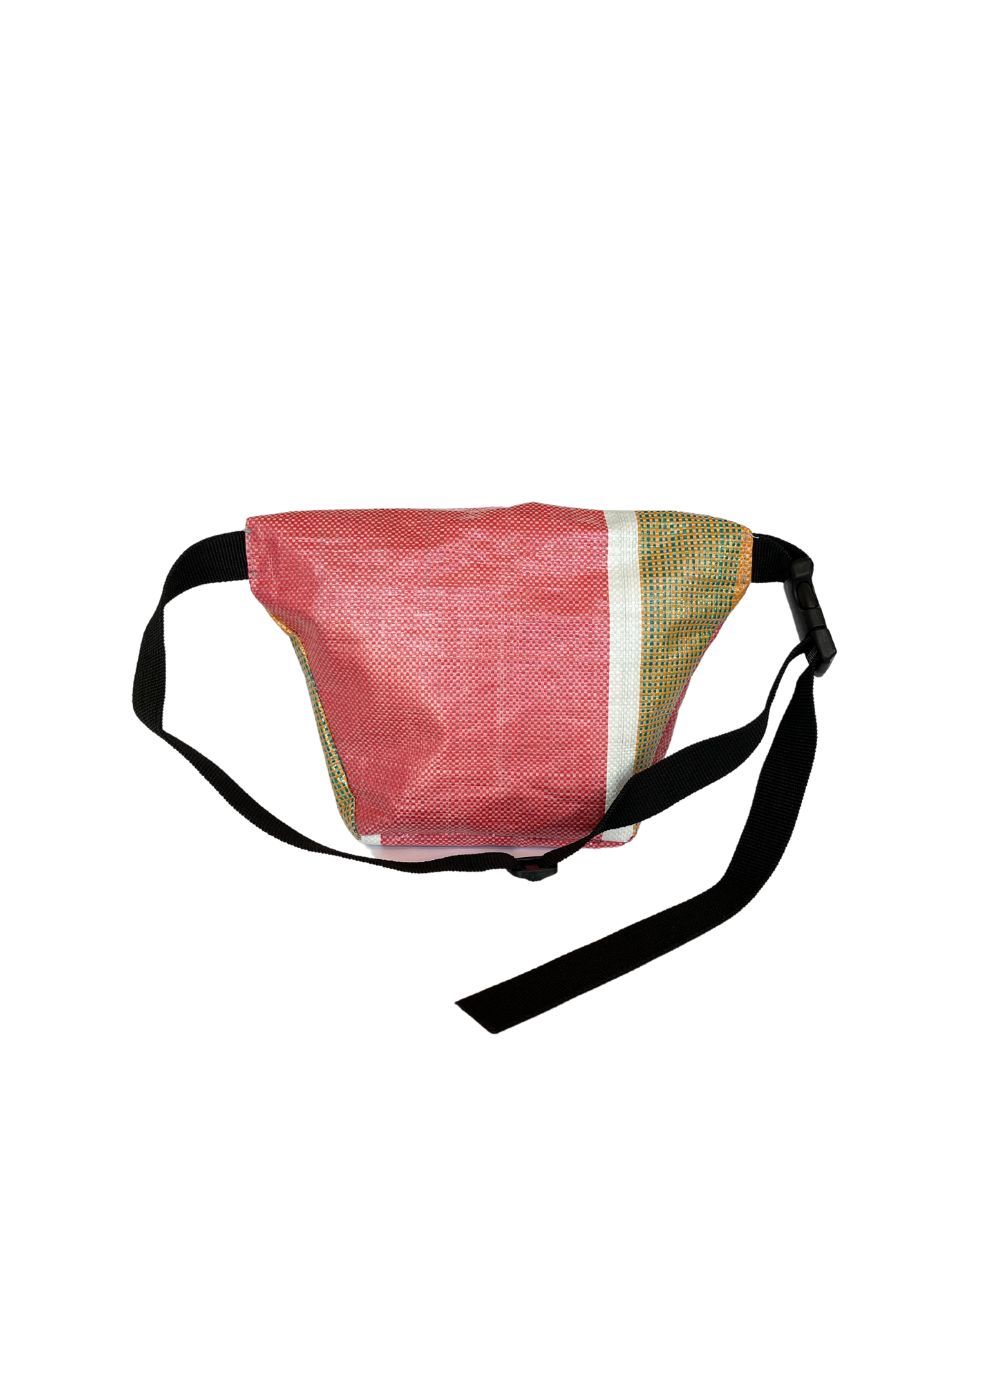 SAMPLE Sako Small Belt Bag